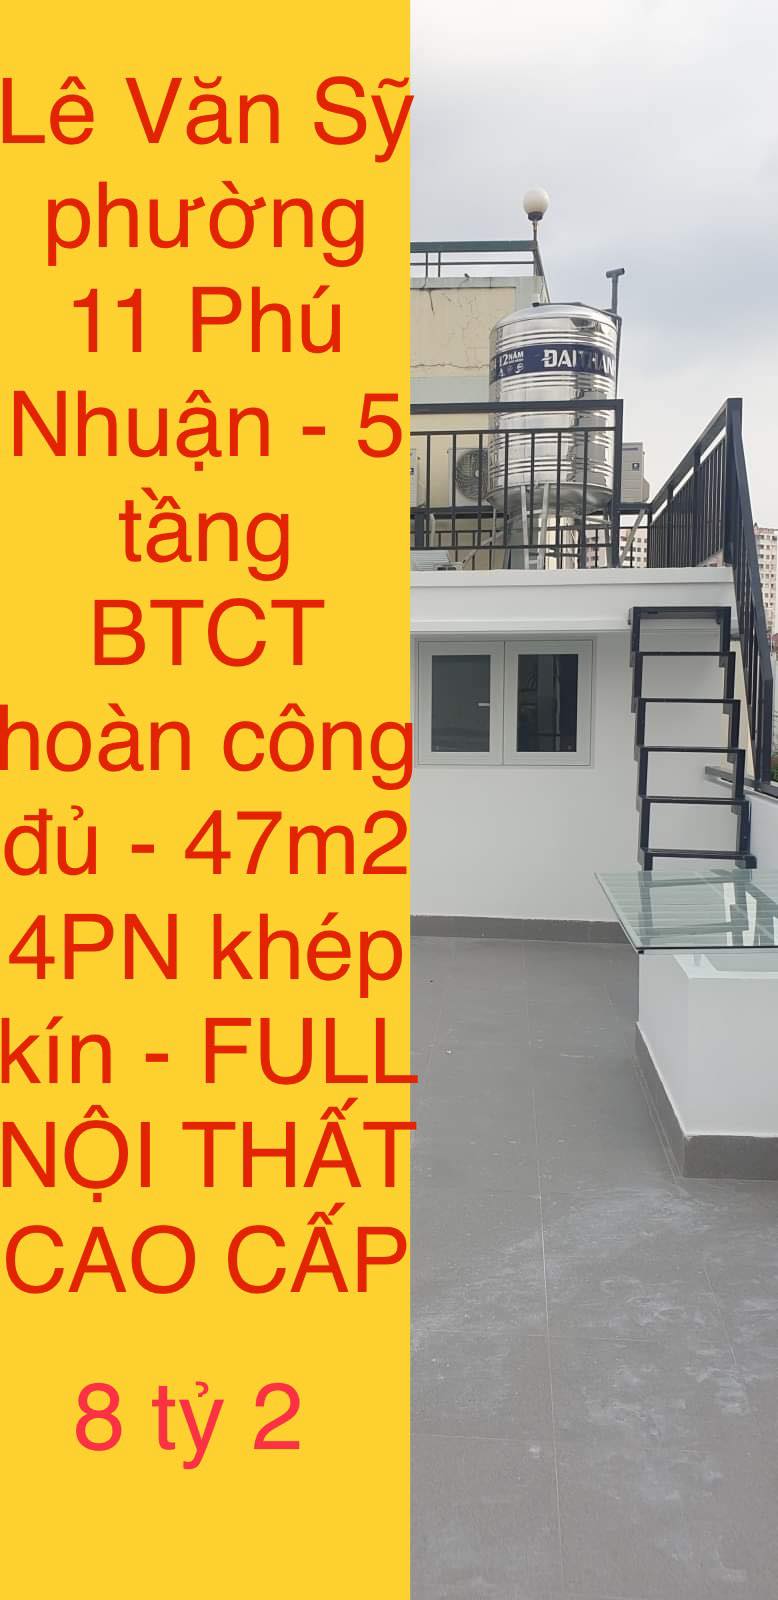 Nhà mới, Lê Văn Sỹ phường 11 Phú Nhuận, 5 tầng BTCT, Full nội thất, nhỉnh 8 tỷ 1